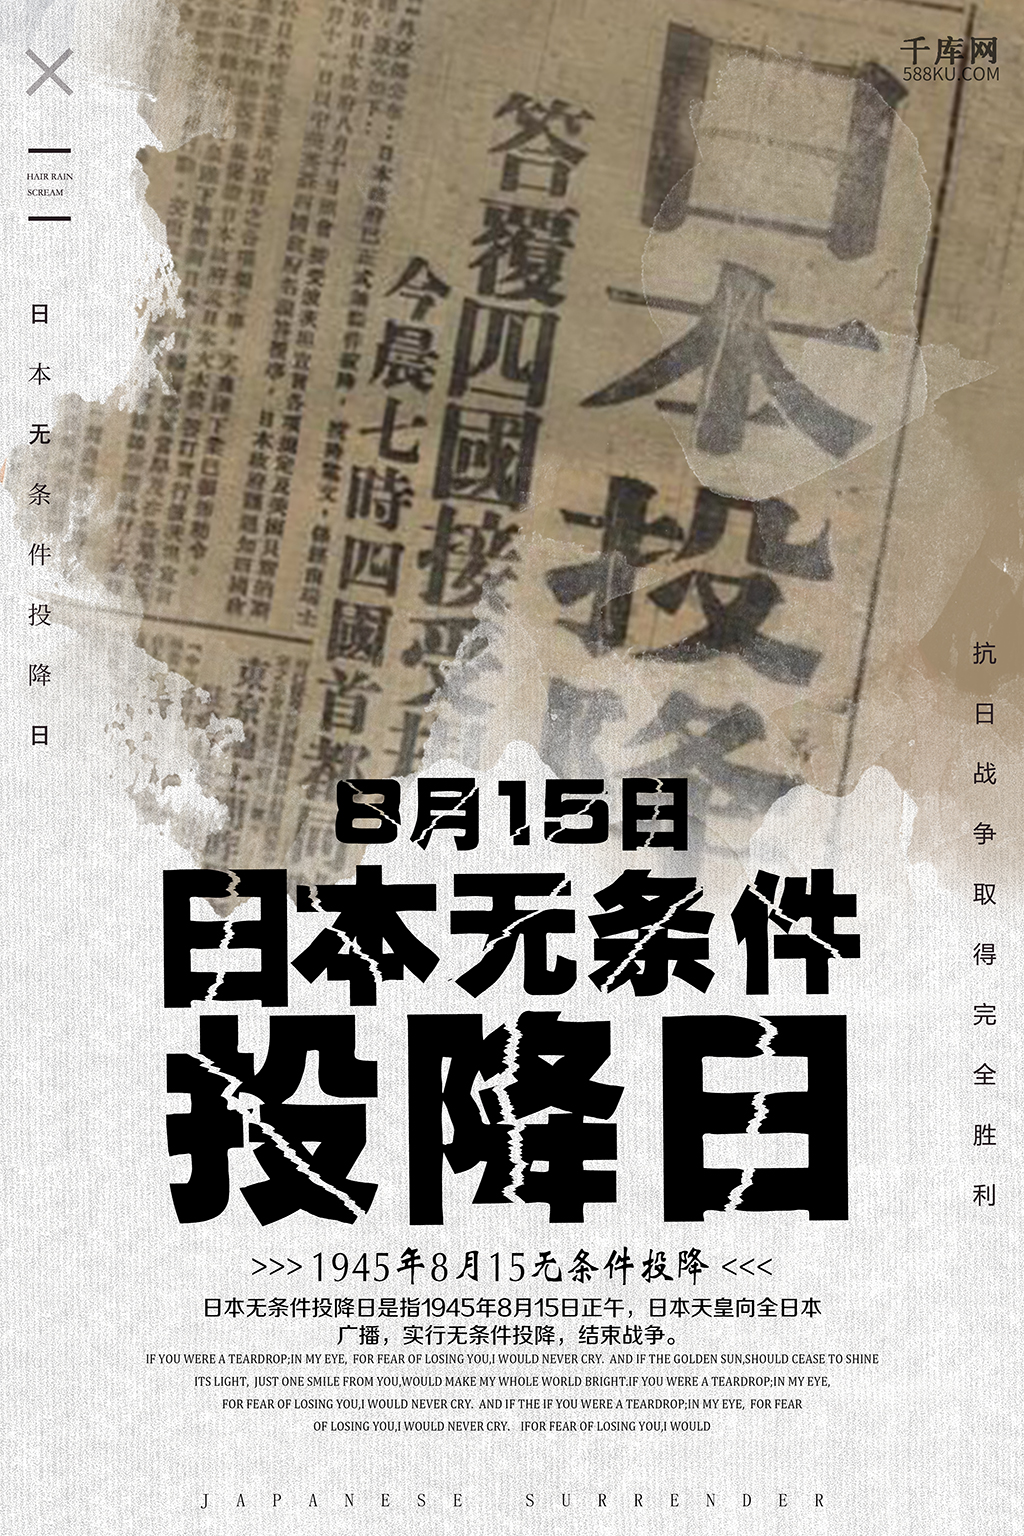 千库原创复古日本投降日海报图片